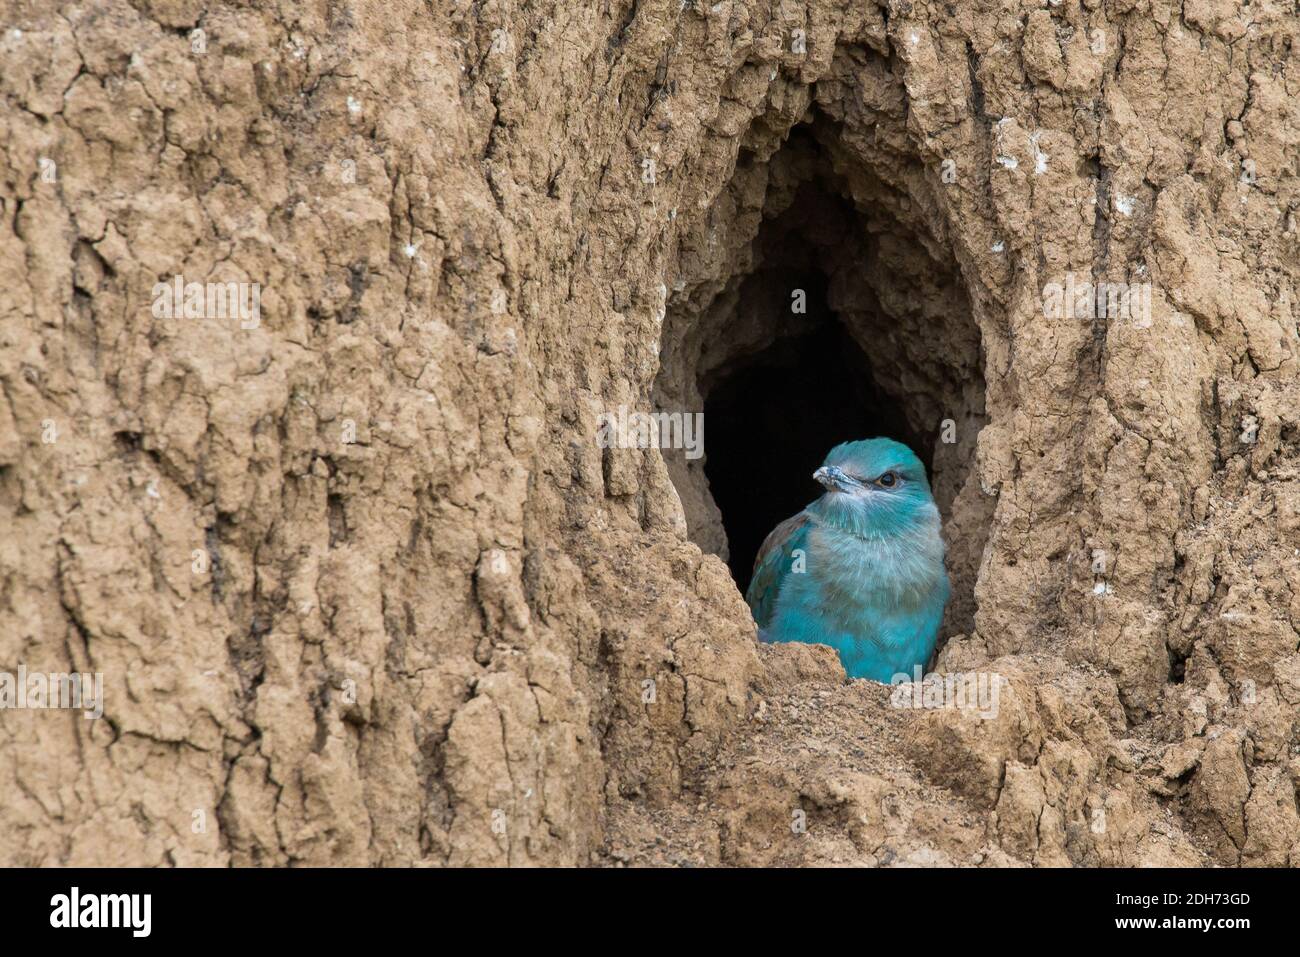 Die Europäische Rolle vogel küken bereitet aus dem Loch zu fliegen - Nest  Stockfotografie - Alamy